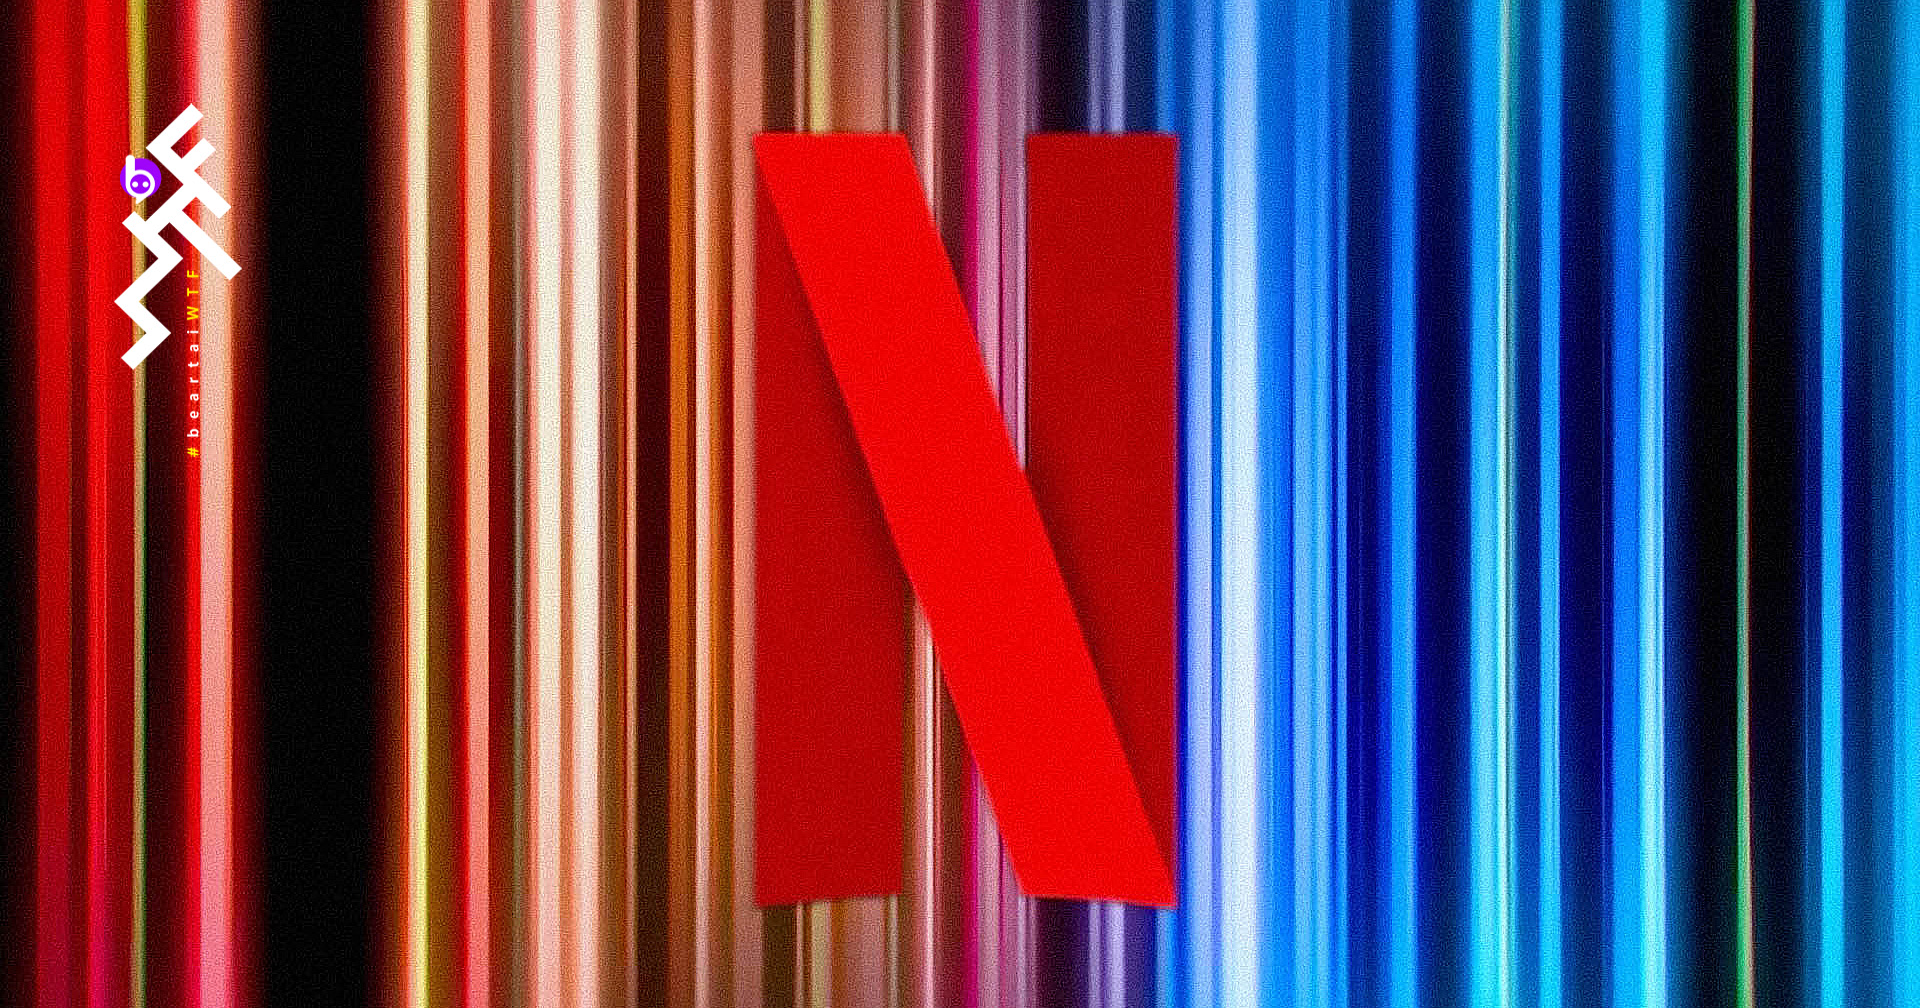 ฟังซาวด์ธีมใหม่สุดอลังการของ Netflix : ประพันธ์โดย ฮันส์ ซิมเมอร์